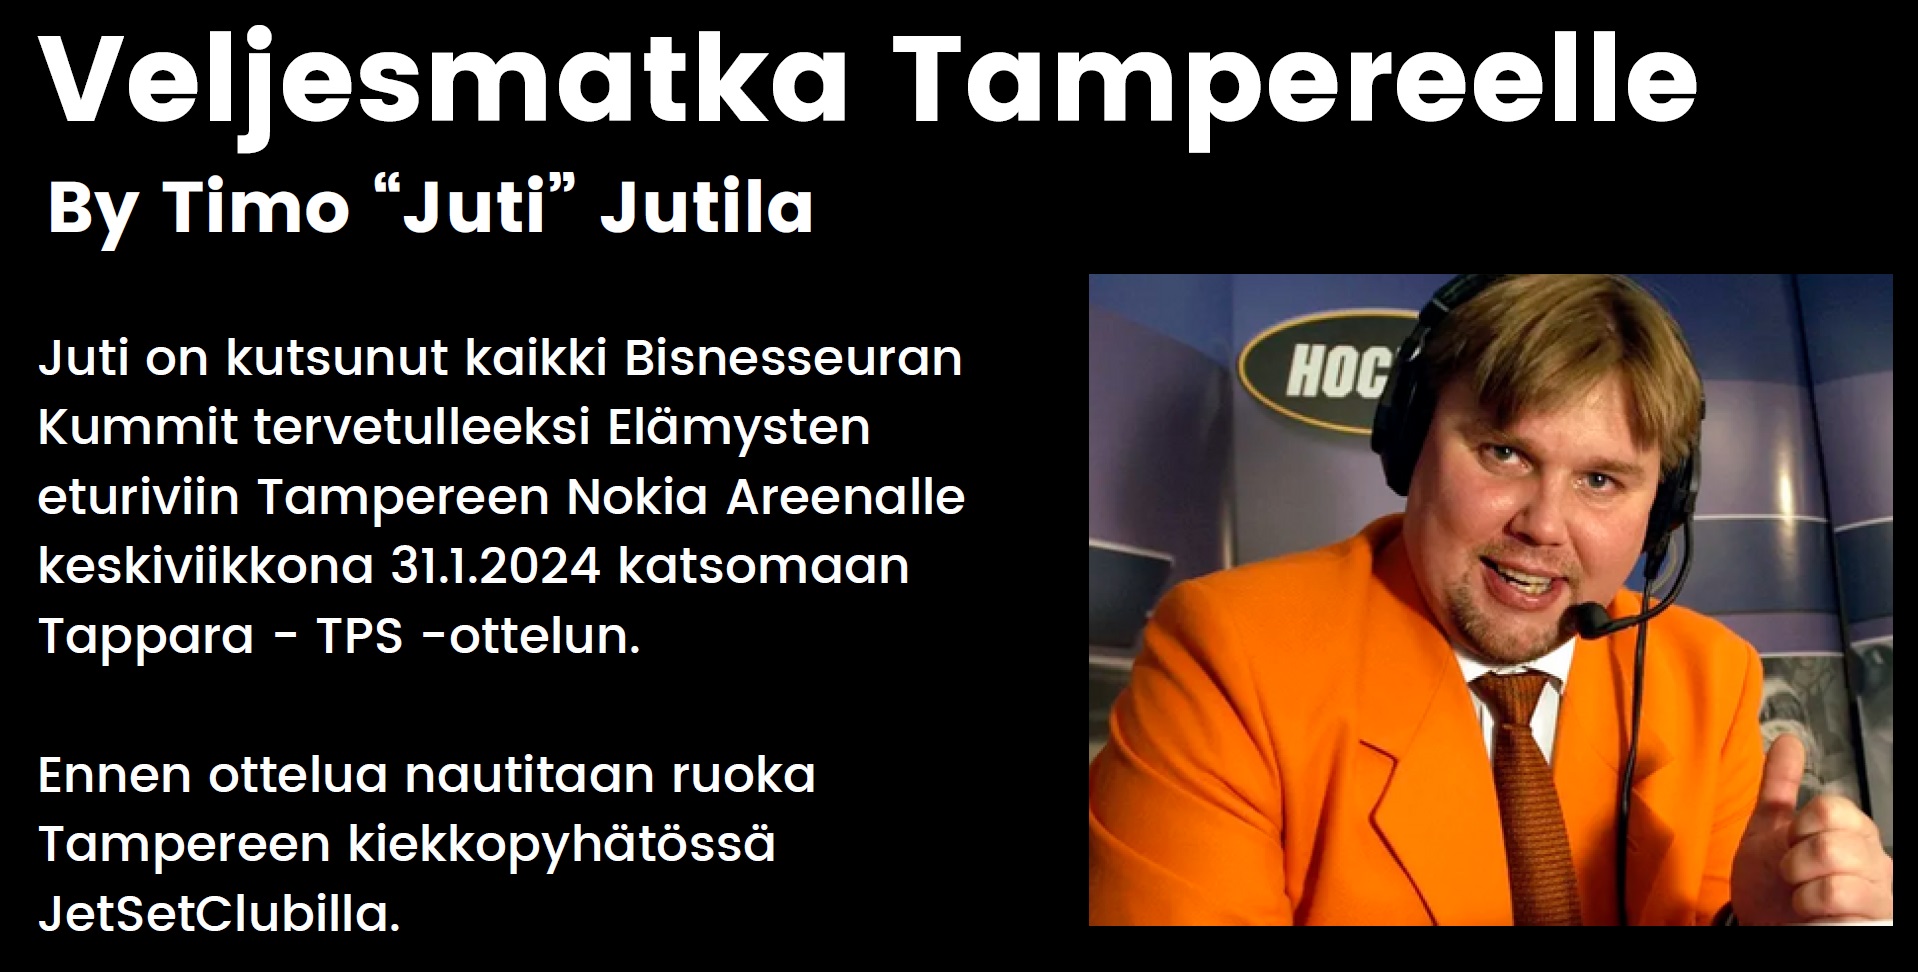 Veljesmatka Tampereelle By Timo “Juti” Jutila